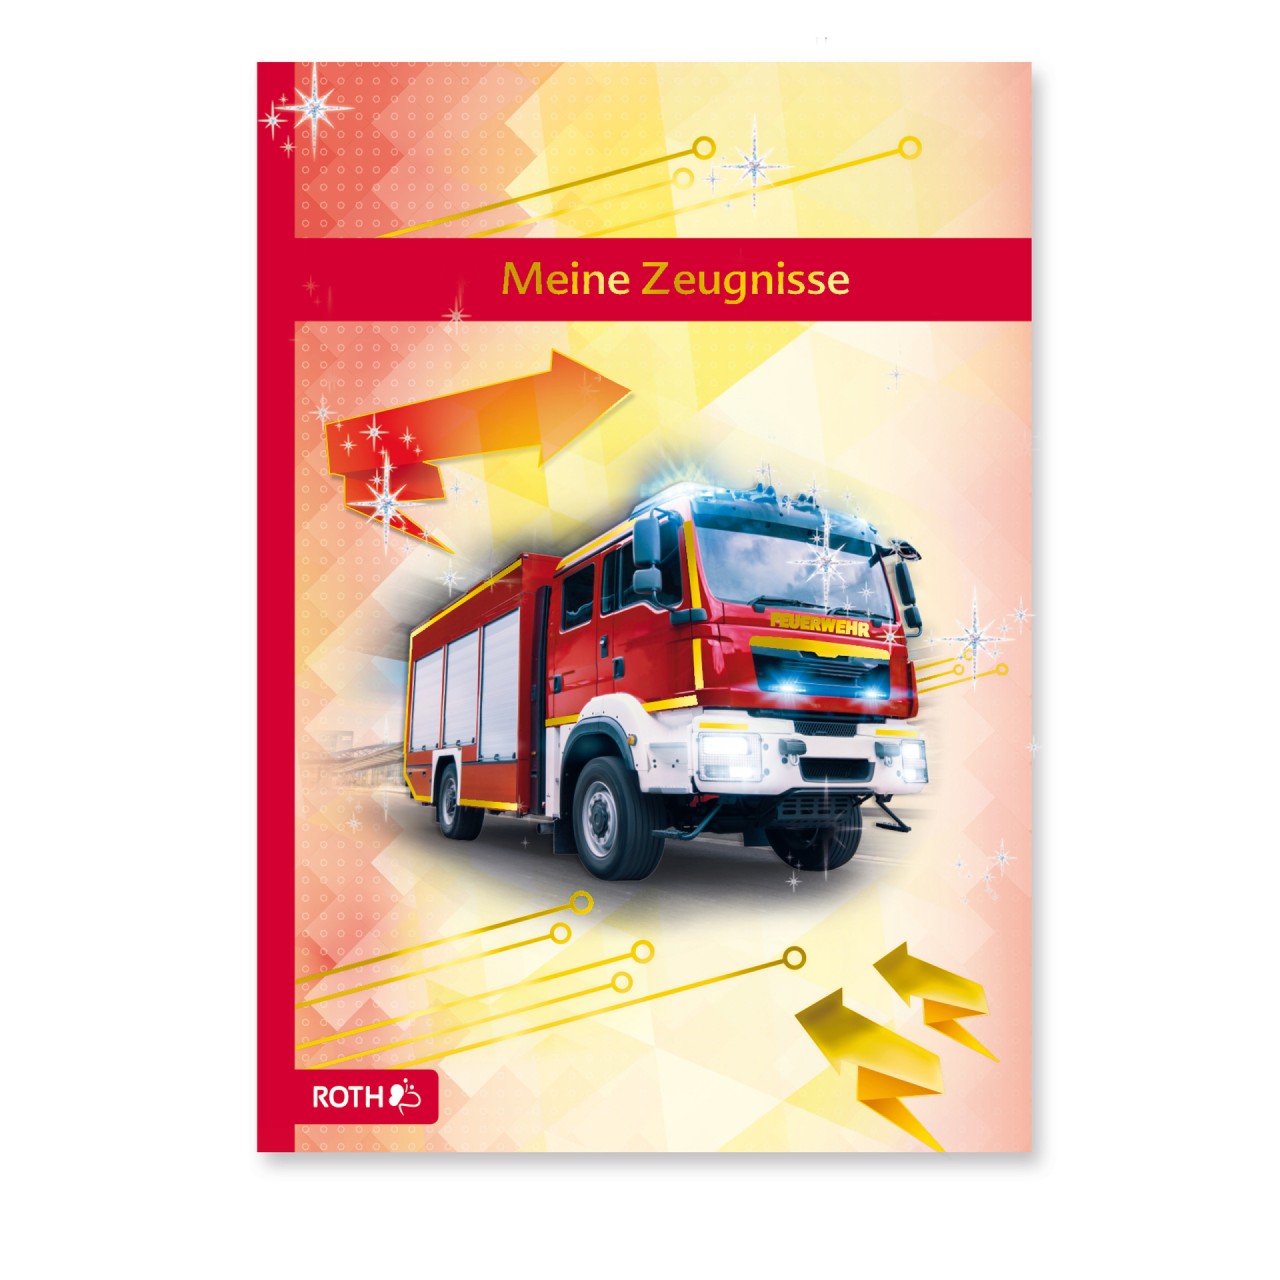 Zeugnismappe Feuerwehr von Roth GmbH